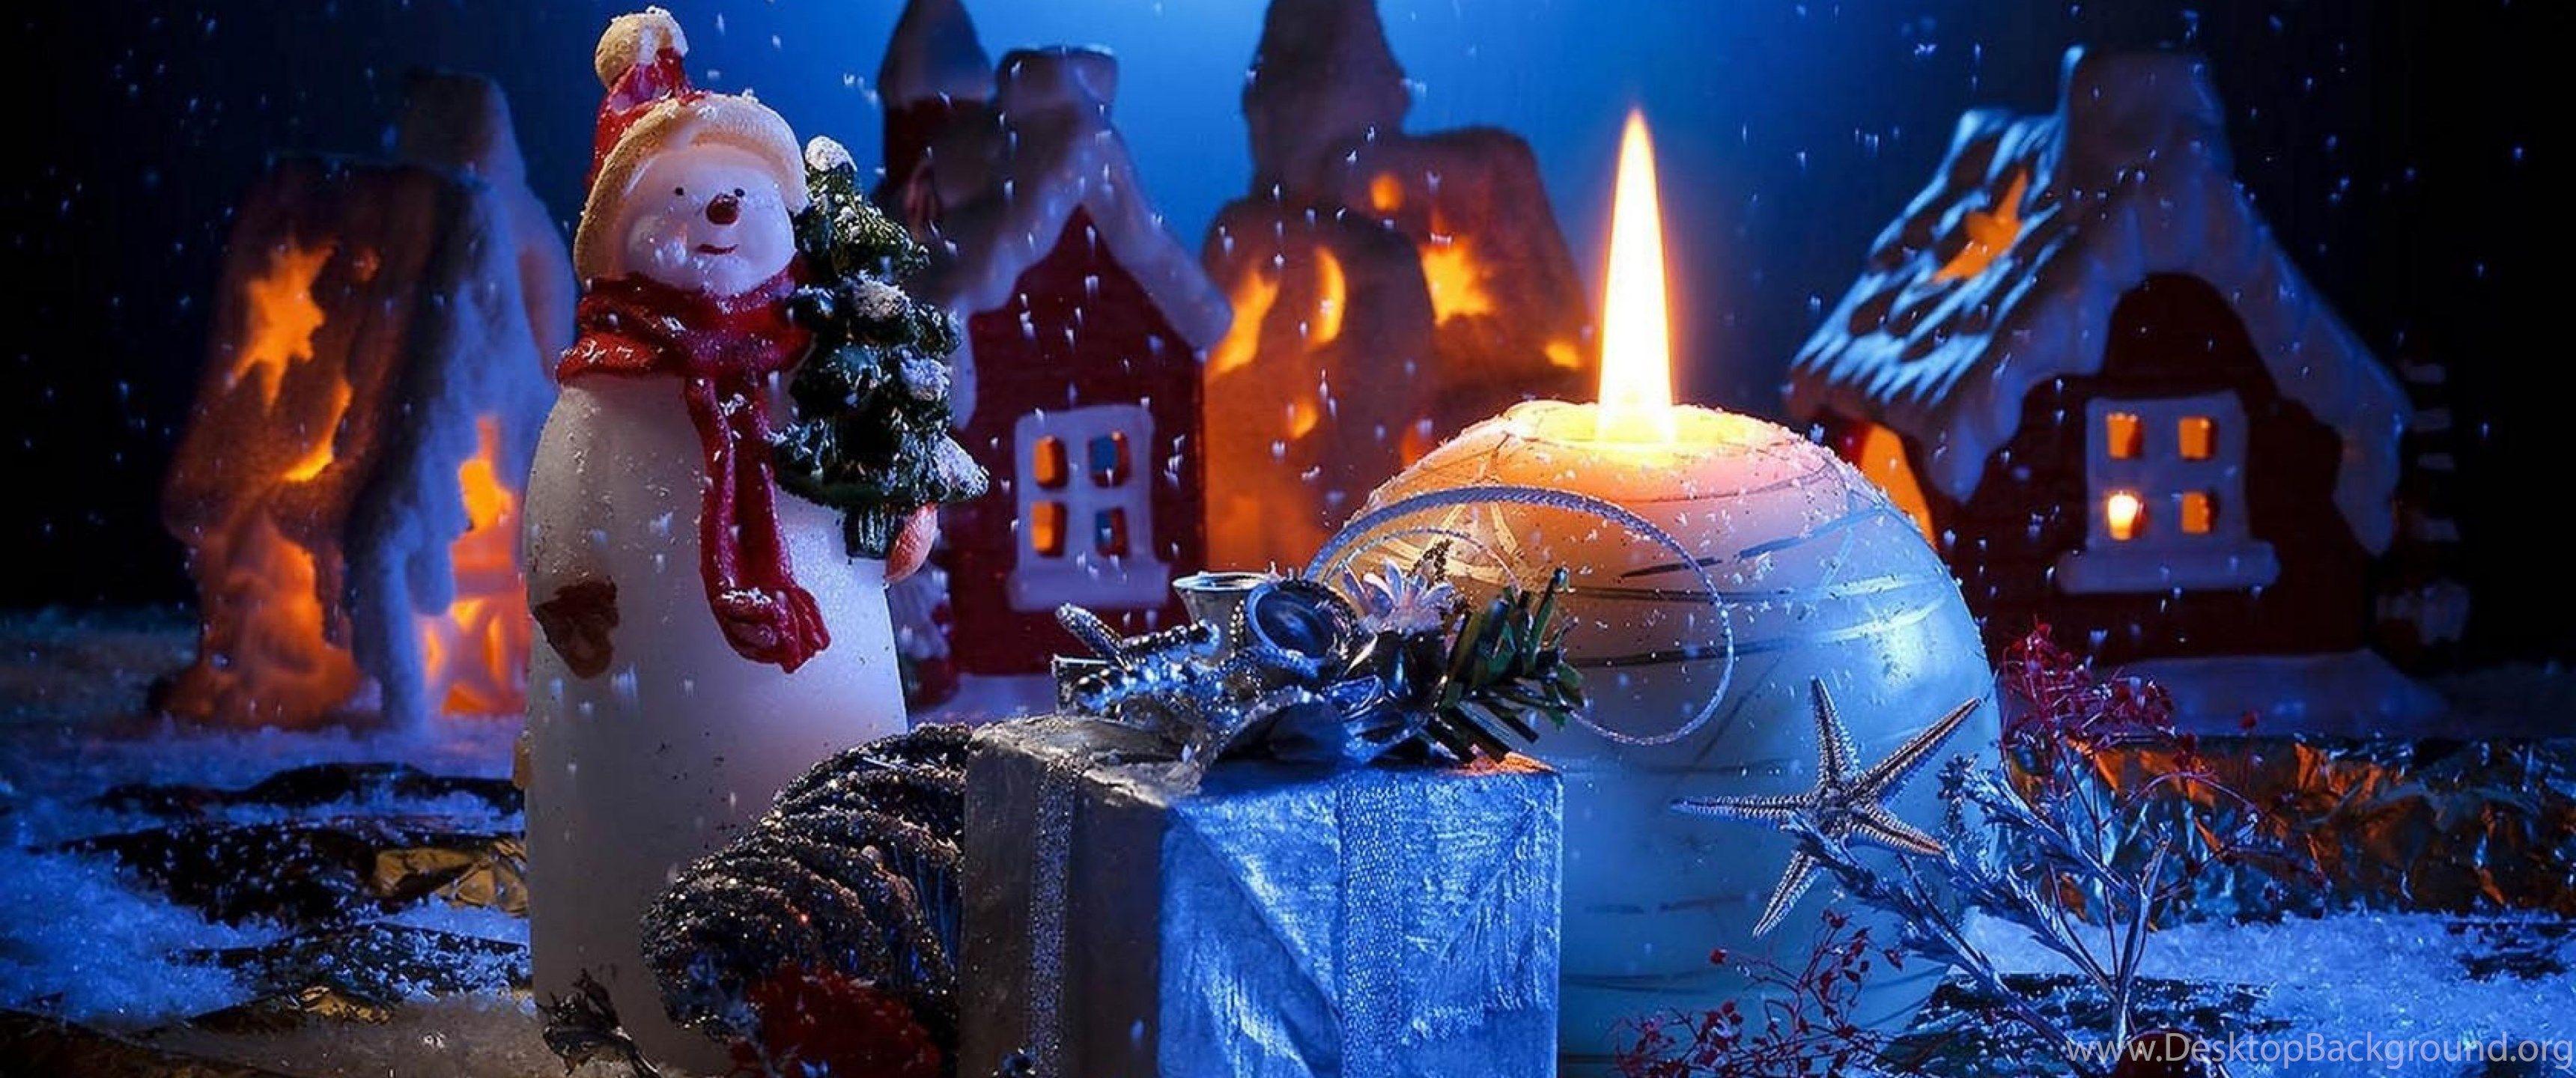 Hình nền Giáng sinh: Tô điểm cho màn hình của bạn bằng những thiết kế hình nền Noel đẹp mắt, mang tới cảm giác ấm áp, ngọt ngào, hòa mình vào không khí của ngày lễ đặc biệt này. Hãy xem qua những tác phẩm nghệ thuật chỉn chu, tinh tế và chọn cho mình một tấm hình ưng ý nhất.